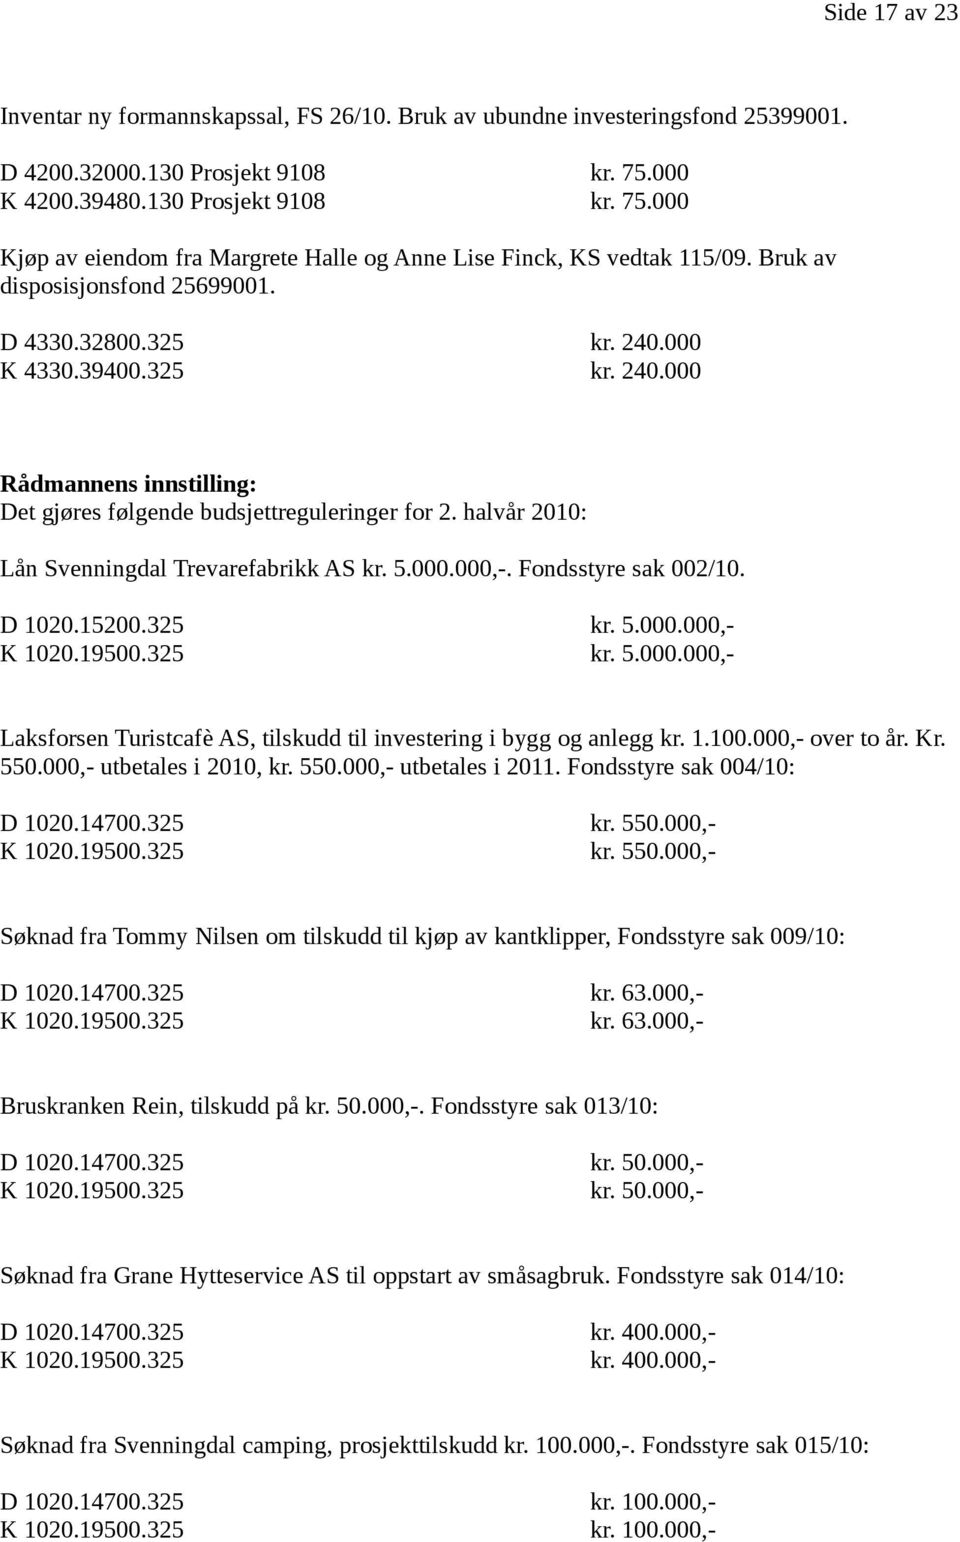 325 kr. 240.000 Rådmannens innstilling: Det gjøres følgende budsjettreguleringer for 2. halvår 2010: Lån Svenningdal Trevarefabrikk AS kr. 5.000.000,-. Fondsstyre sak 002/10. D 1020.15200.325 kr. 5.000.000,- K 1020.